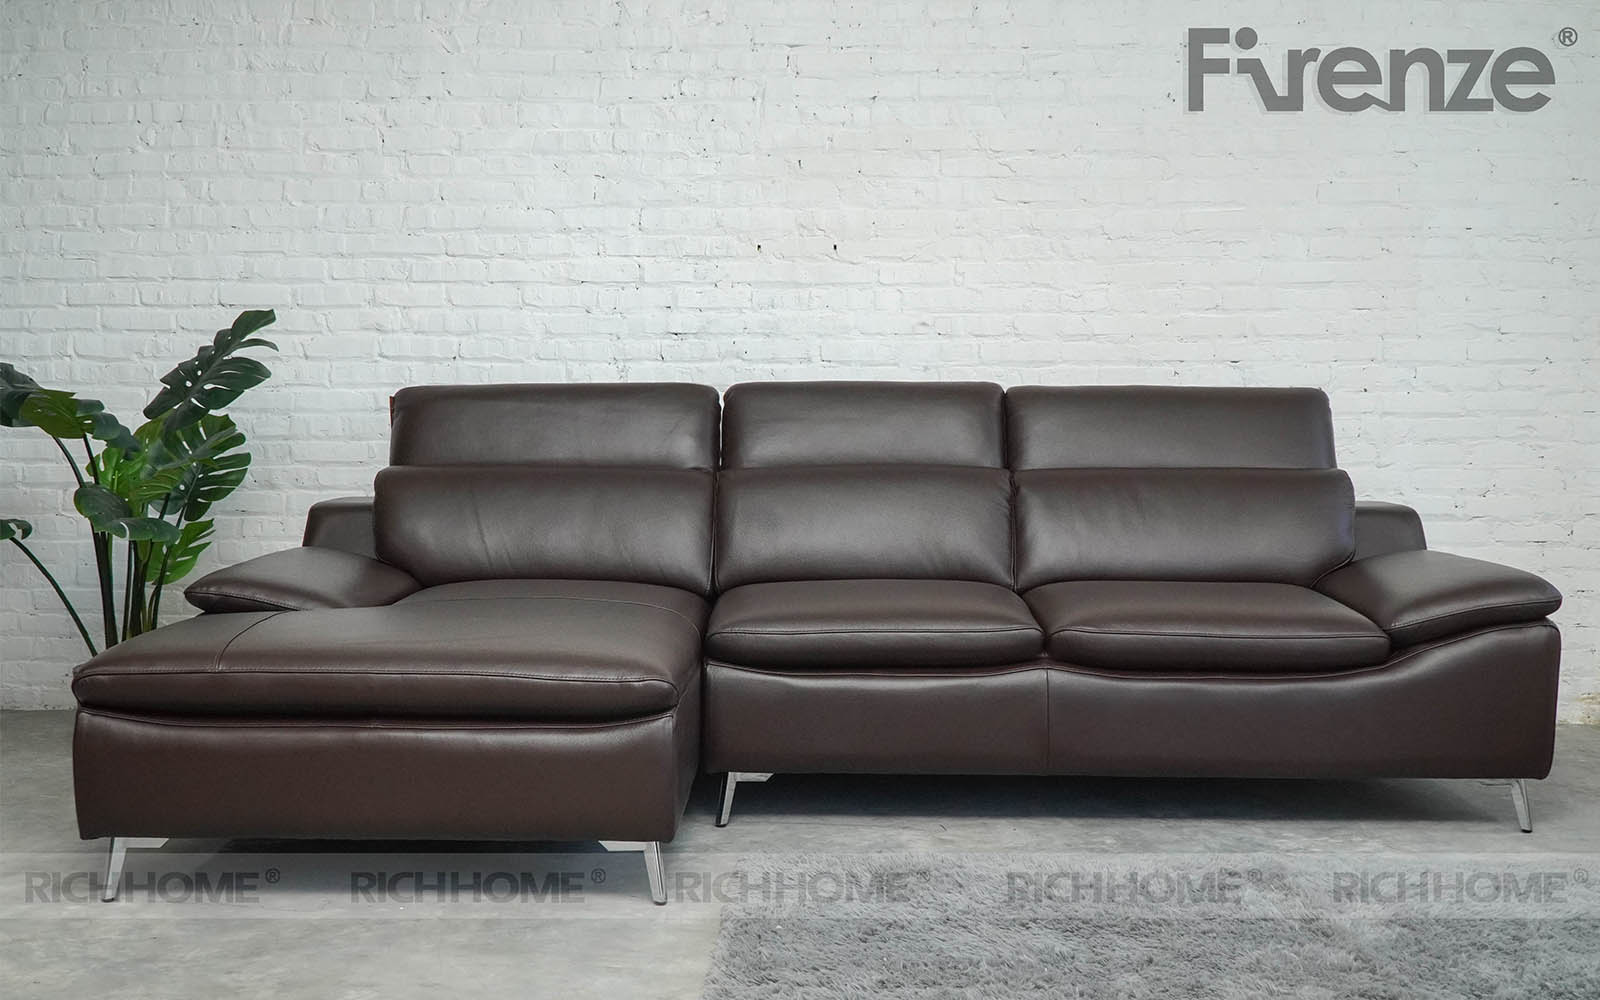 Kích thước ghế sofa 3 chỗ và những bước chọn kích thước sofa cho phù hợp - Ảnh 5